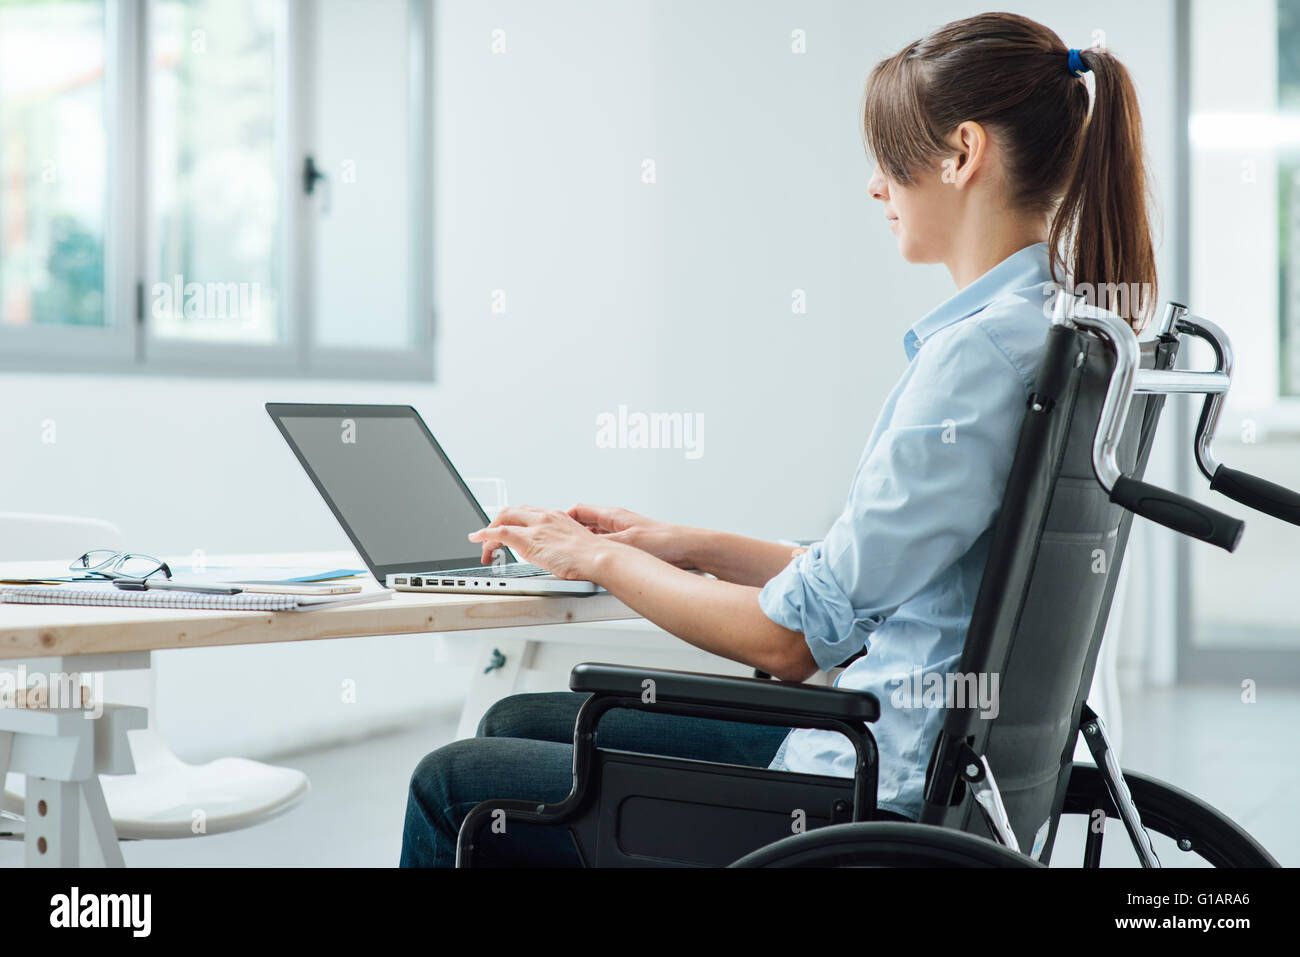 Les jeunes personnes handicapées business woman in wheelchair travaillant au bureau et la saisie sur un ordinateur portable, l'accessibilité et l'indépendance concep Banque D'Images